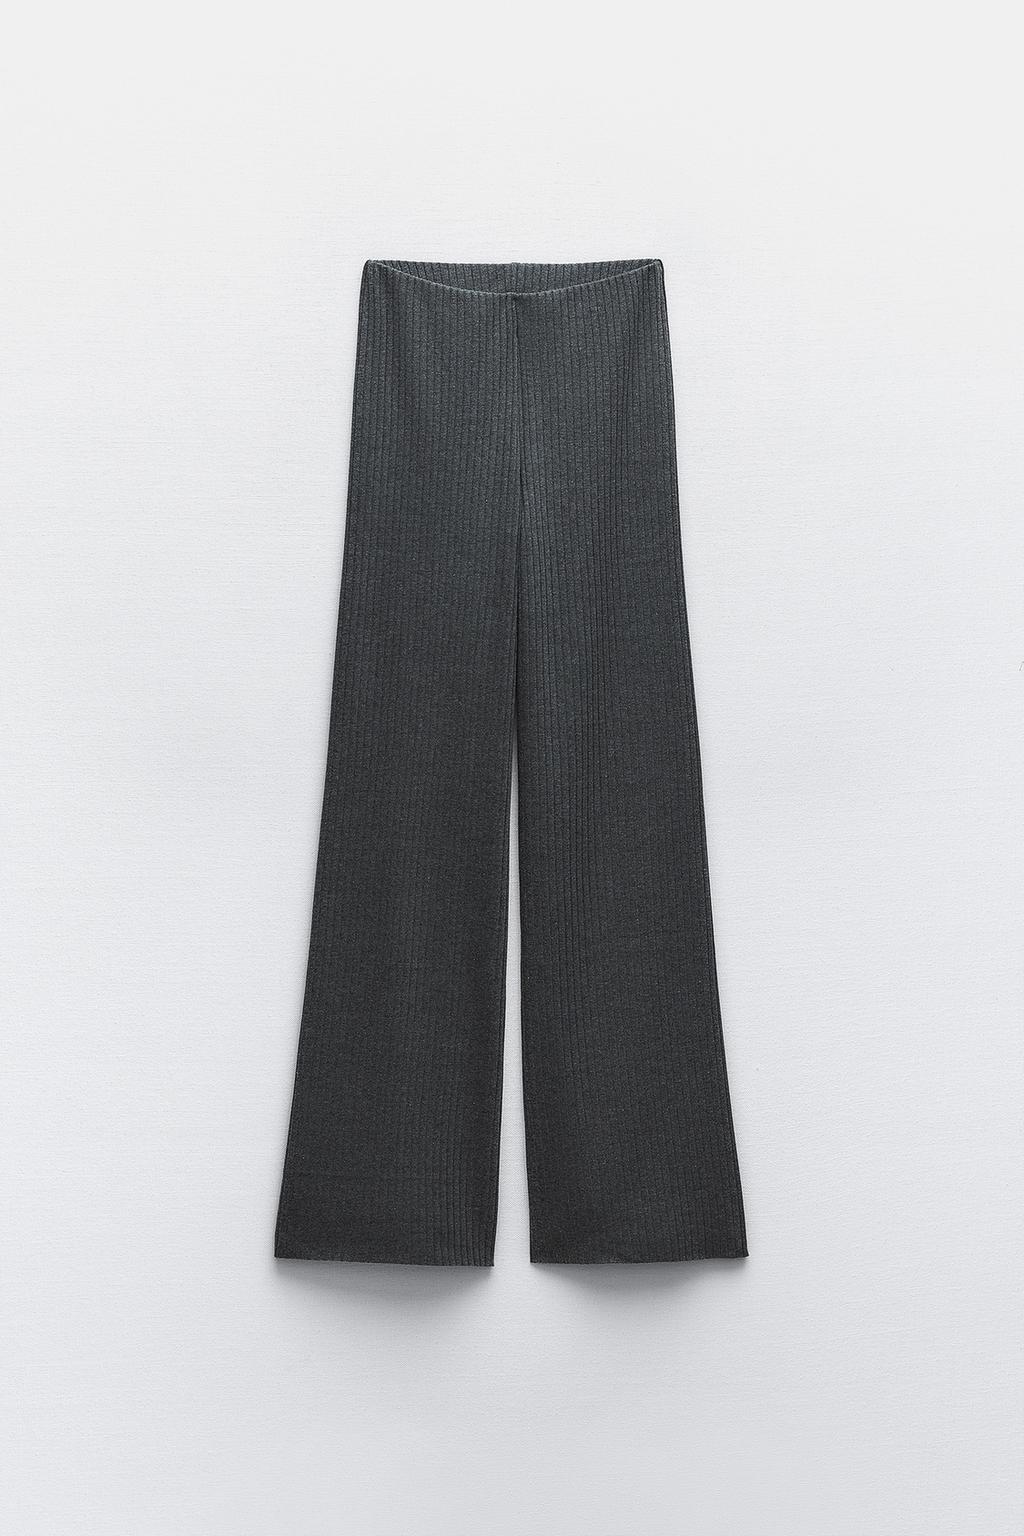 Широкие брюки в ребрику ZARA, серый мергель брюки карандаш женские с завышенной талией повседневные элегантные тонкие штаны с широкими штанинами с эластичным поясом модная уличная